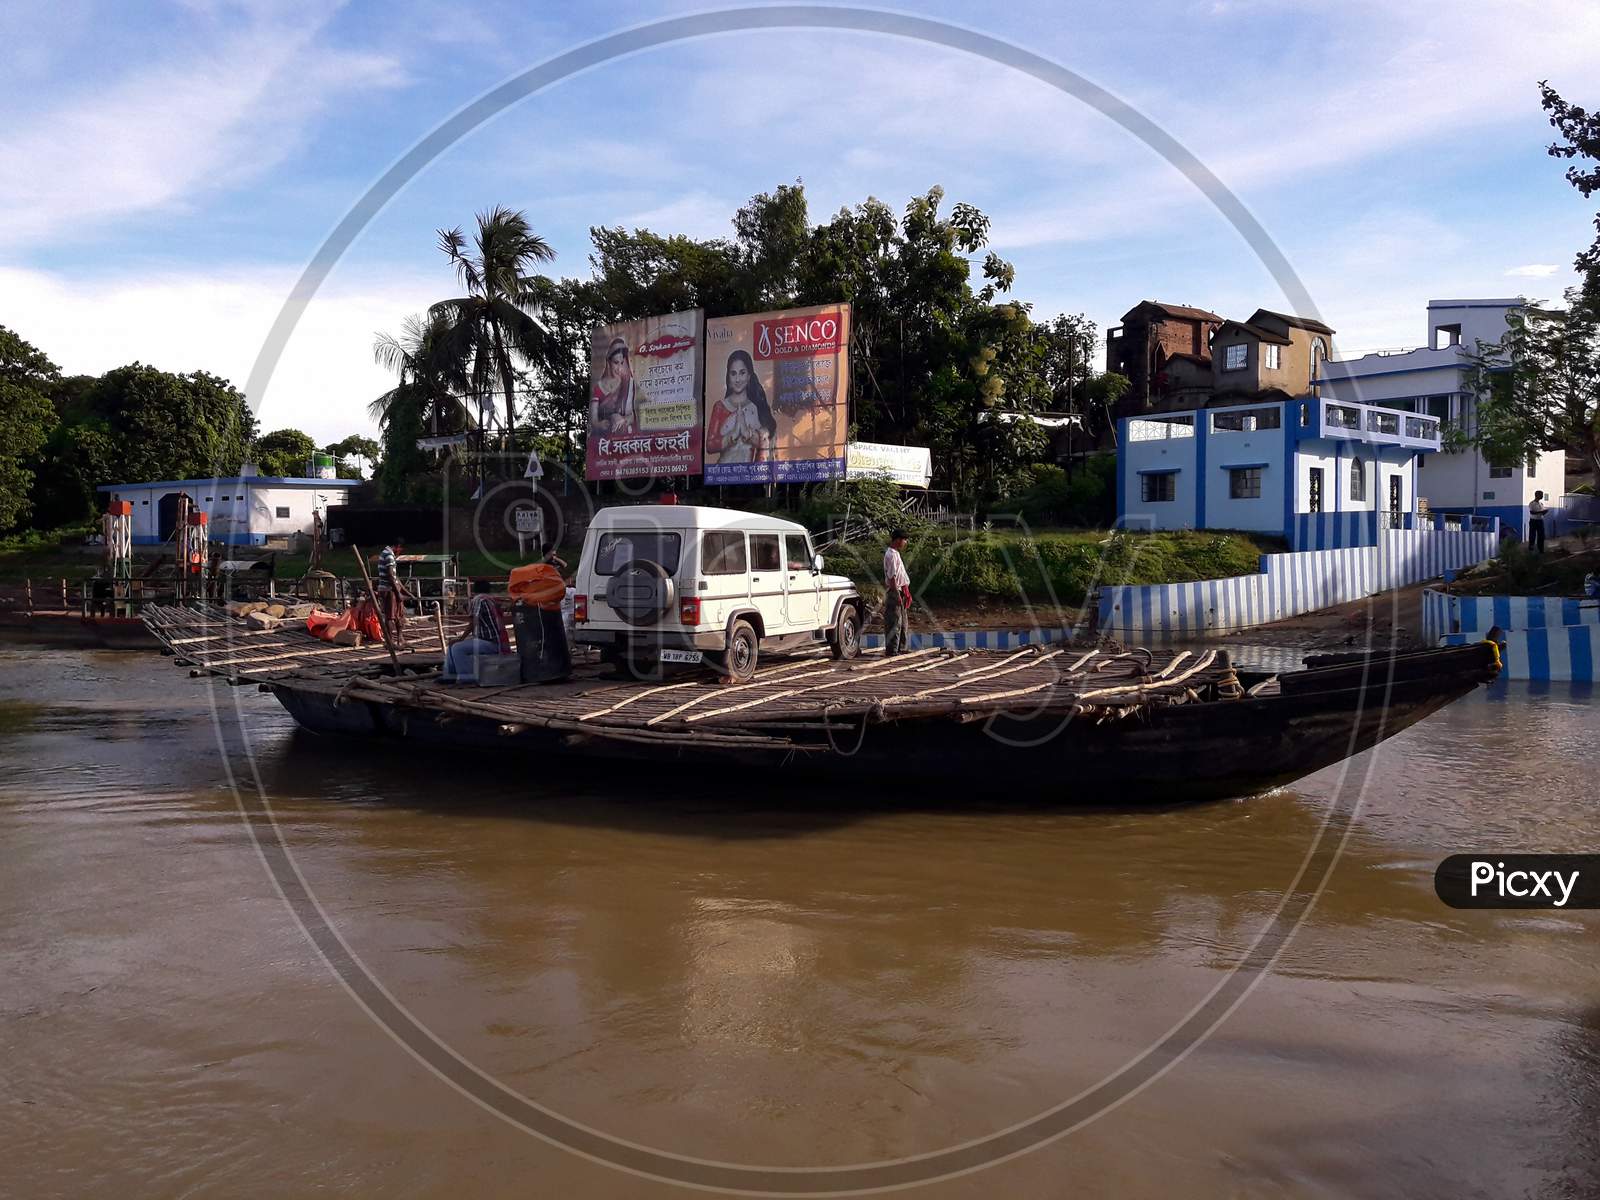 Mode of transportation on ganga river near Katwa Burdwan weat bengal